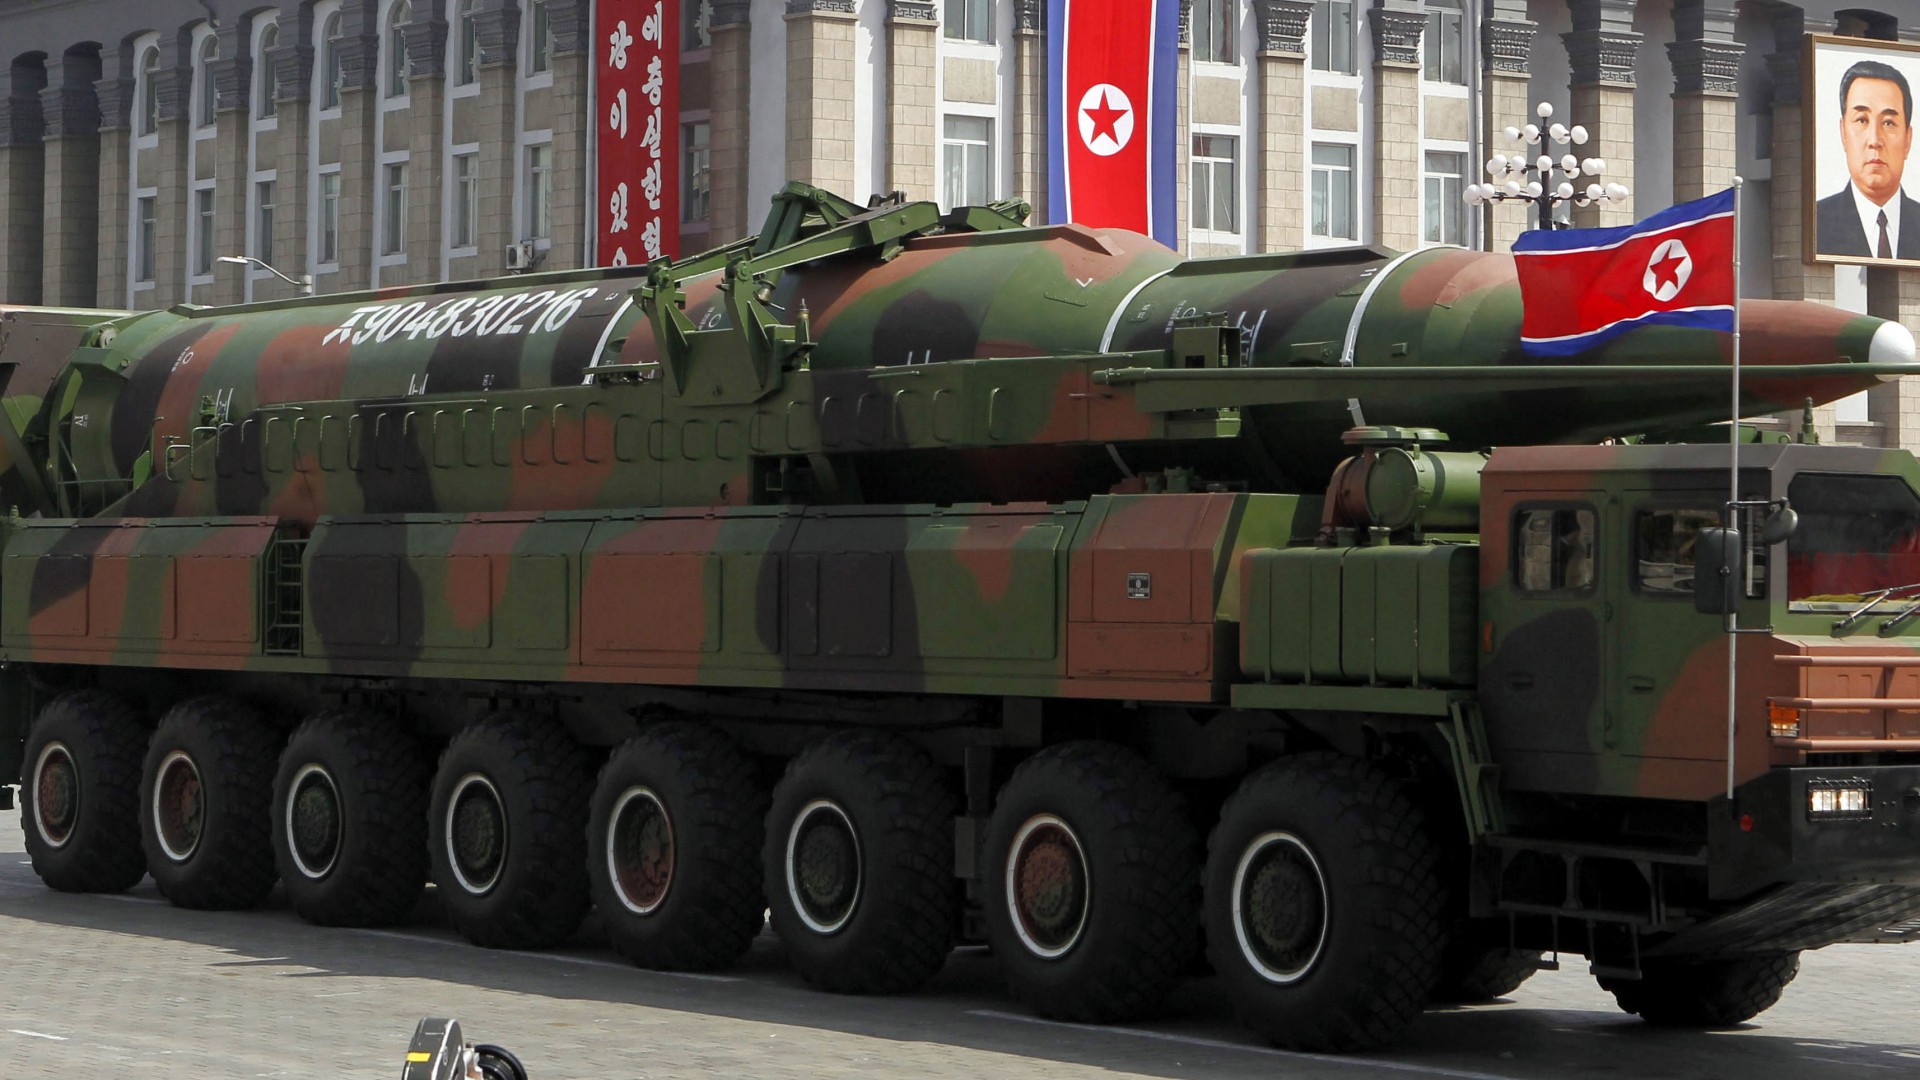 KN-08, No-dong-C, Hwaseong-13, MRBM, DPRK, parade, missile (horizontal)